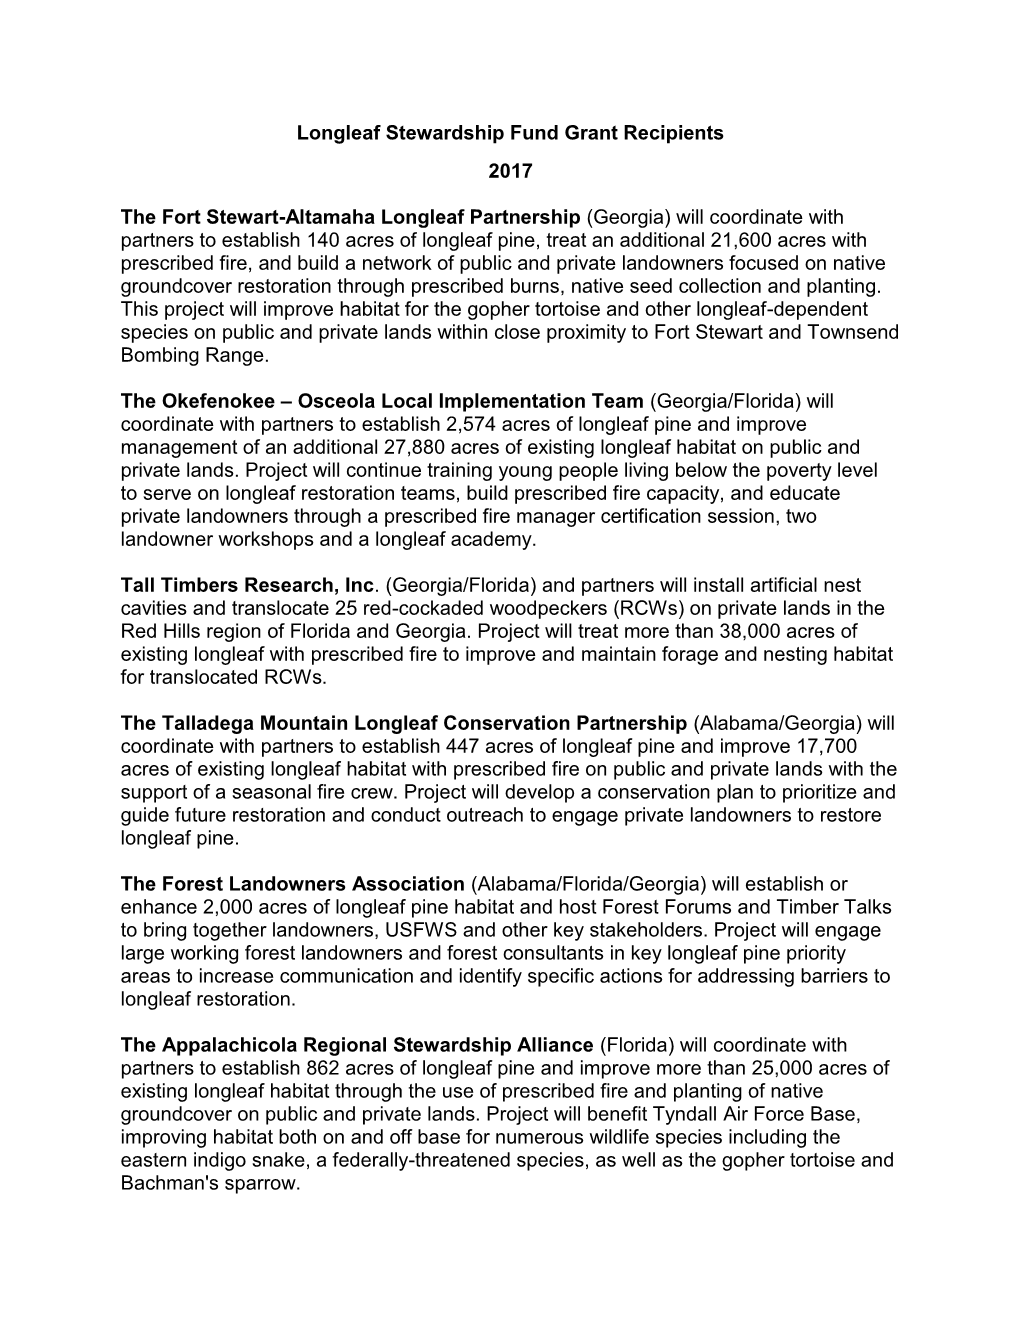 Longleaf Stewardship Fund Grant Recipients 2017 the Fort Stewart